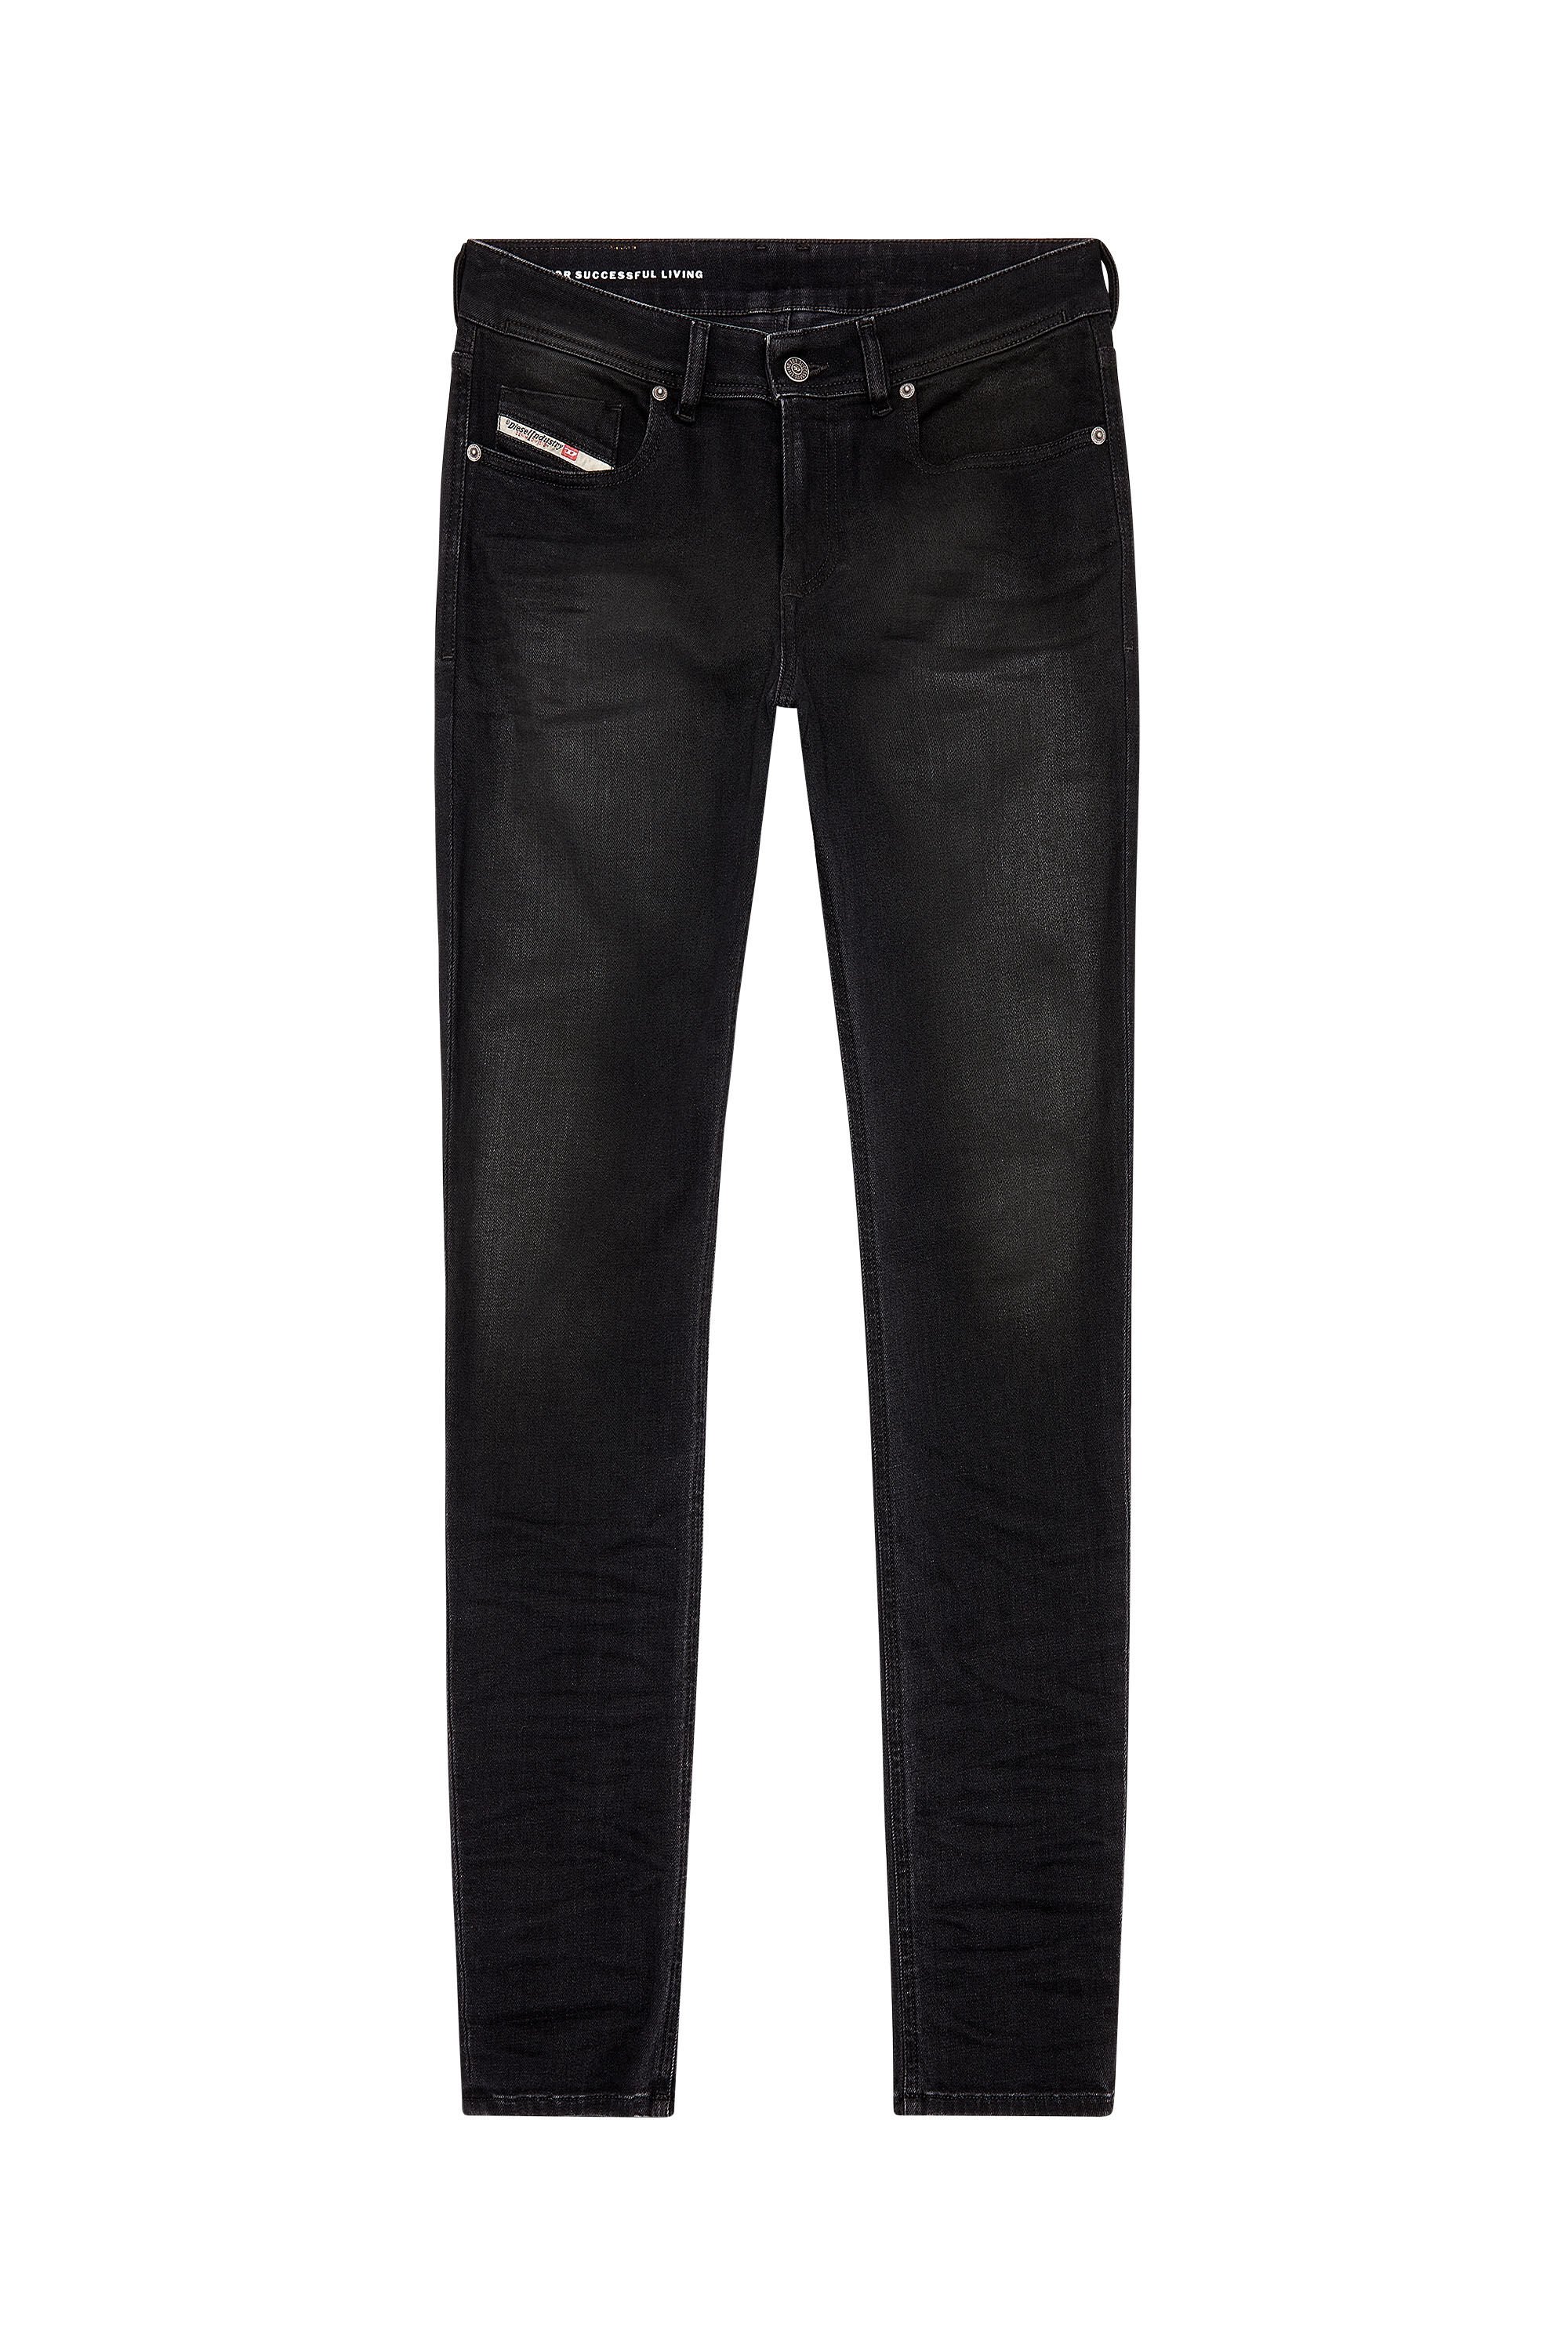 Diesel - Skinny Jeans 1979 Sleenker 09H94, Black/Dark grey - Image 2